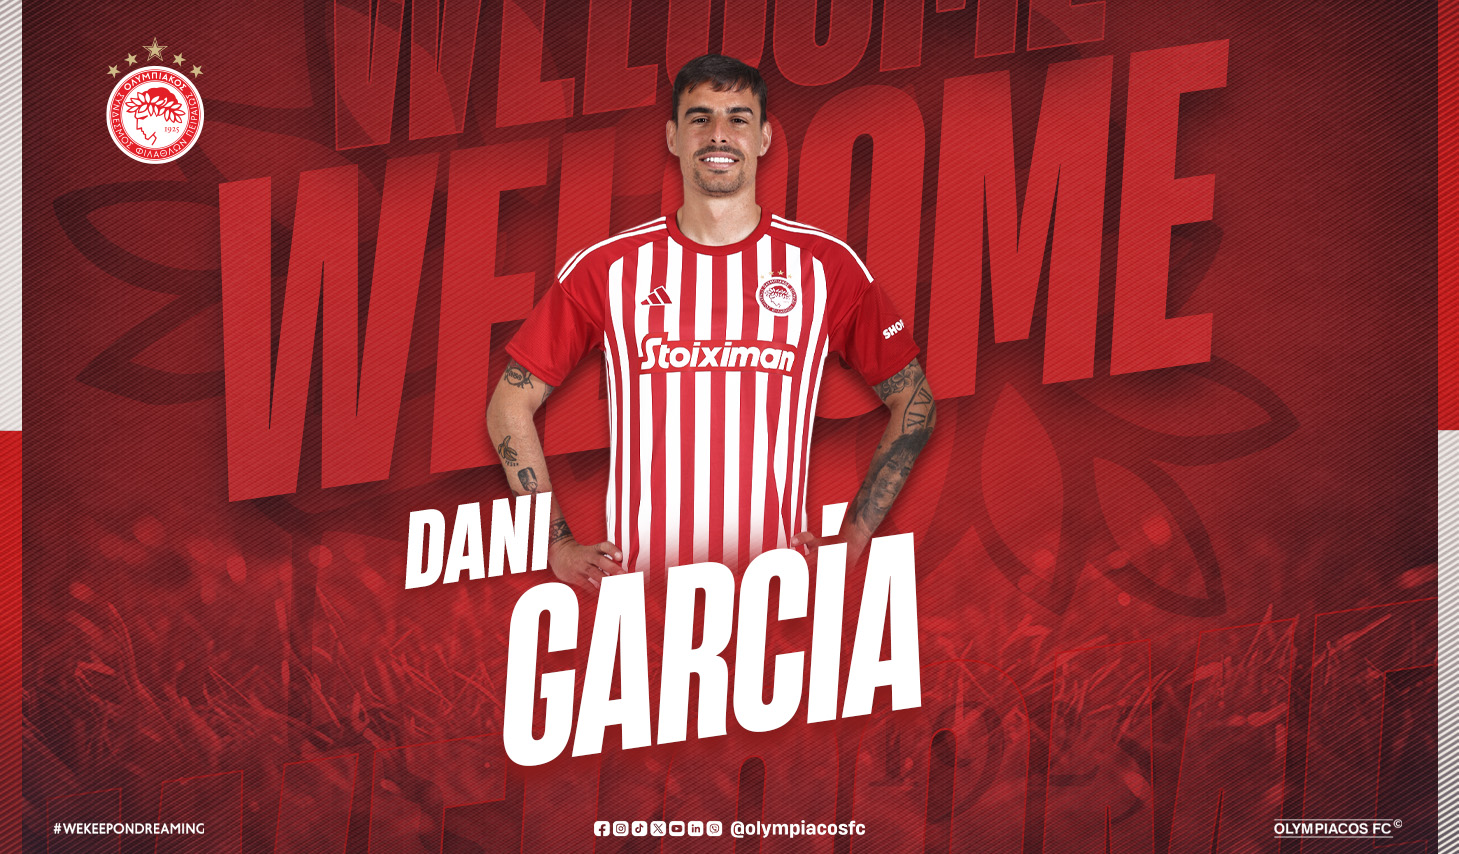 Dani García signe avec l’Olympiacos